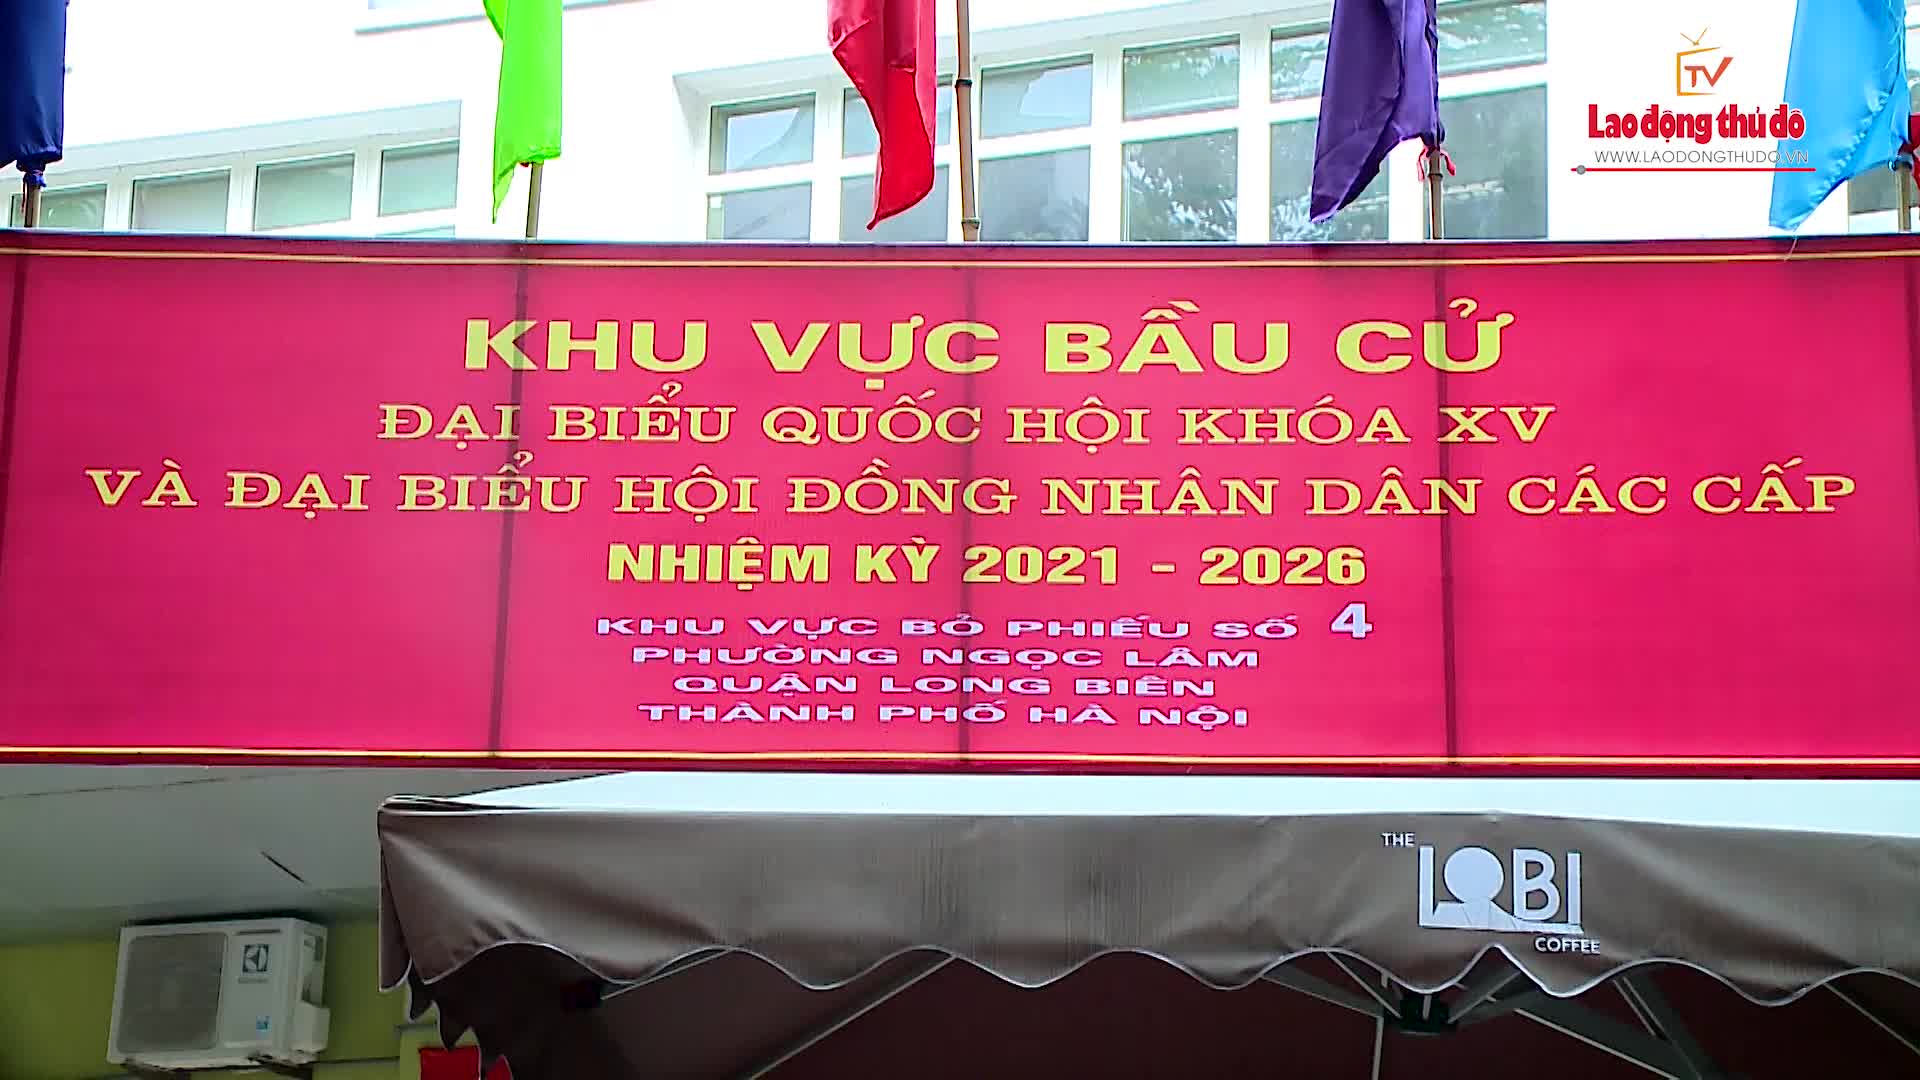 Thành phố Hà Nội tỉ lệ cử tri đi bỏ phiếu đạt hơn 99%.